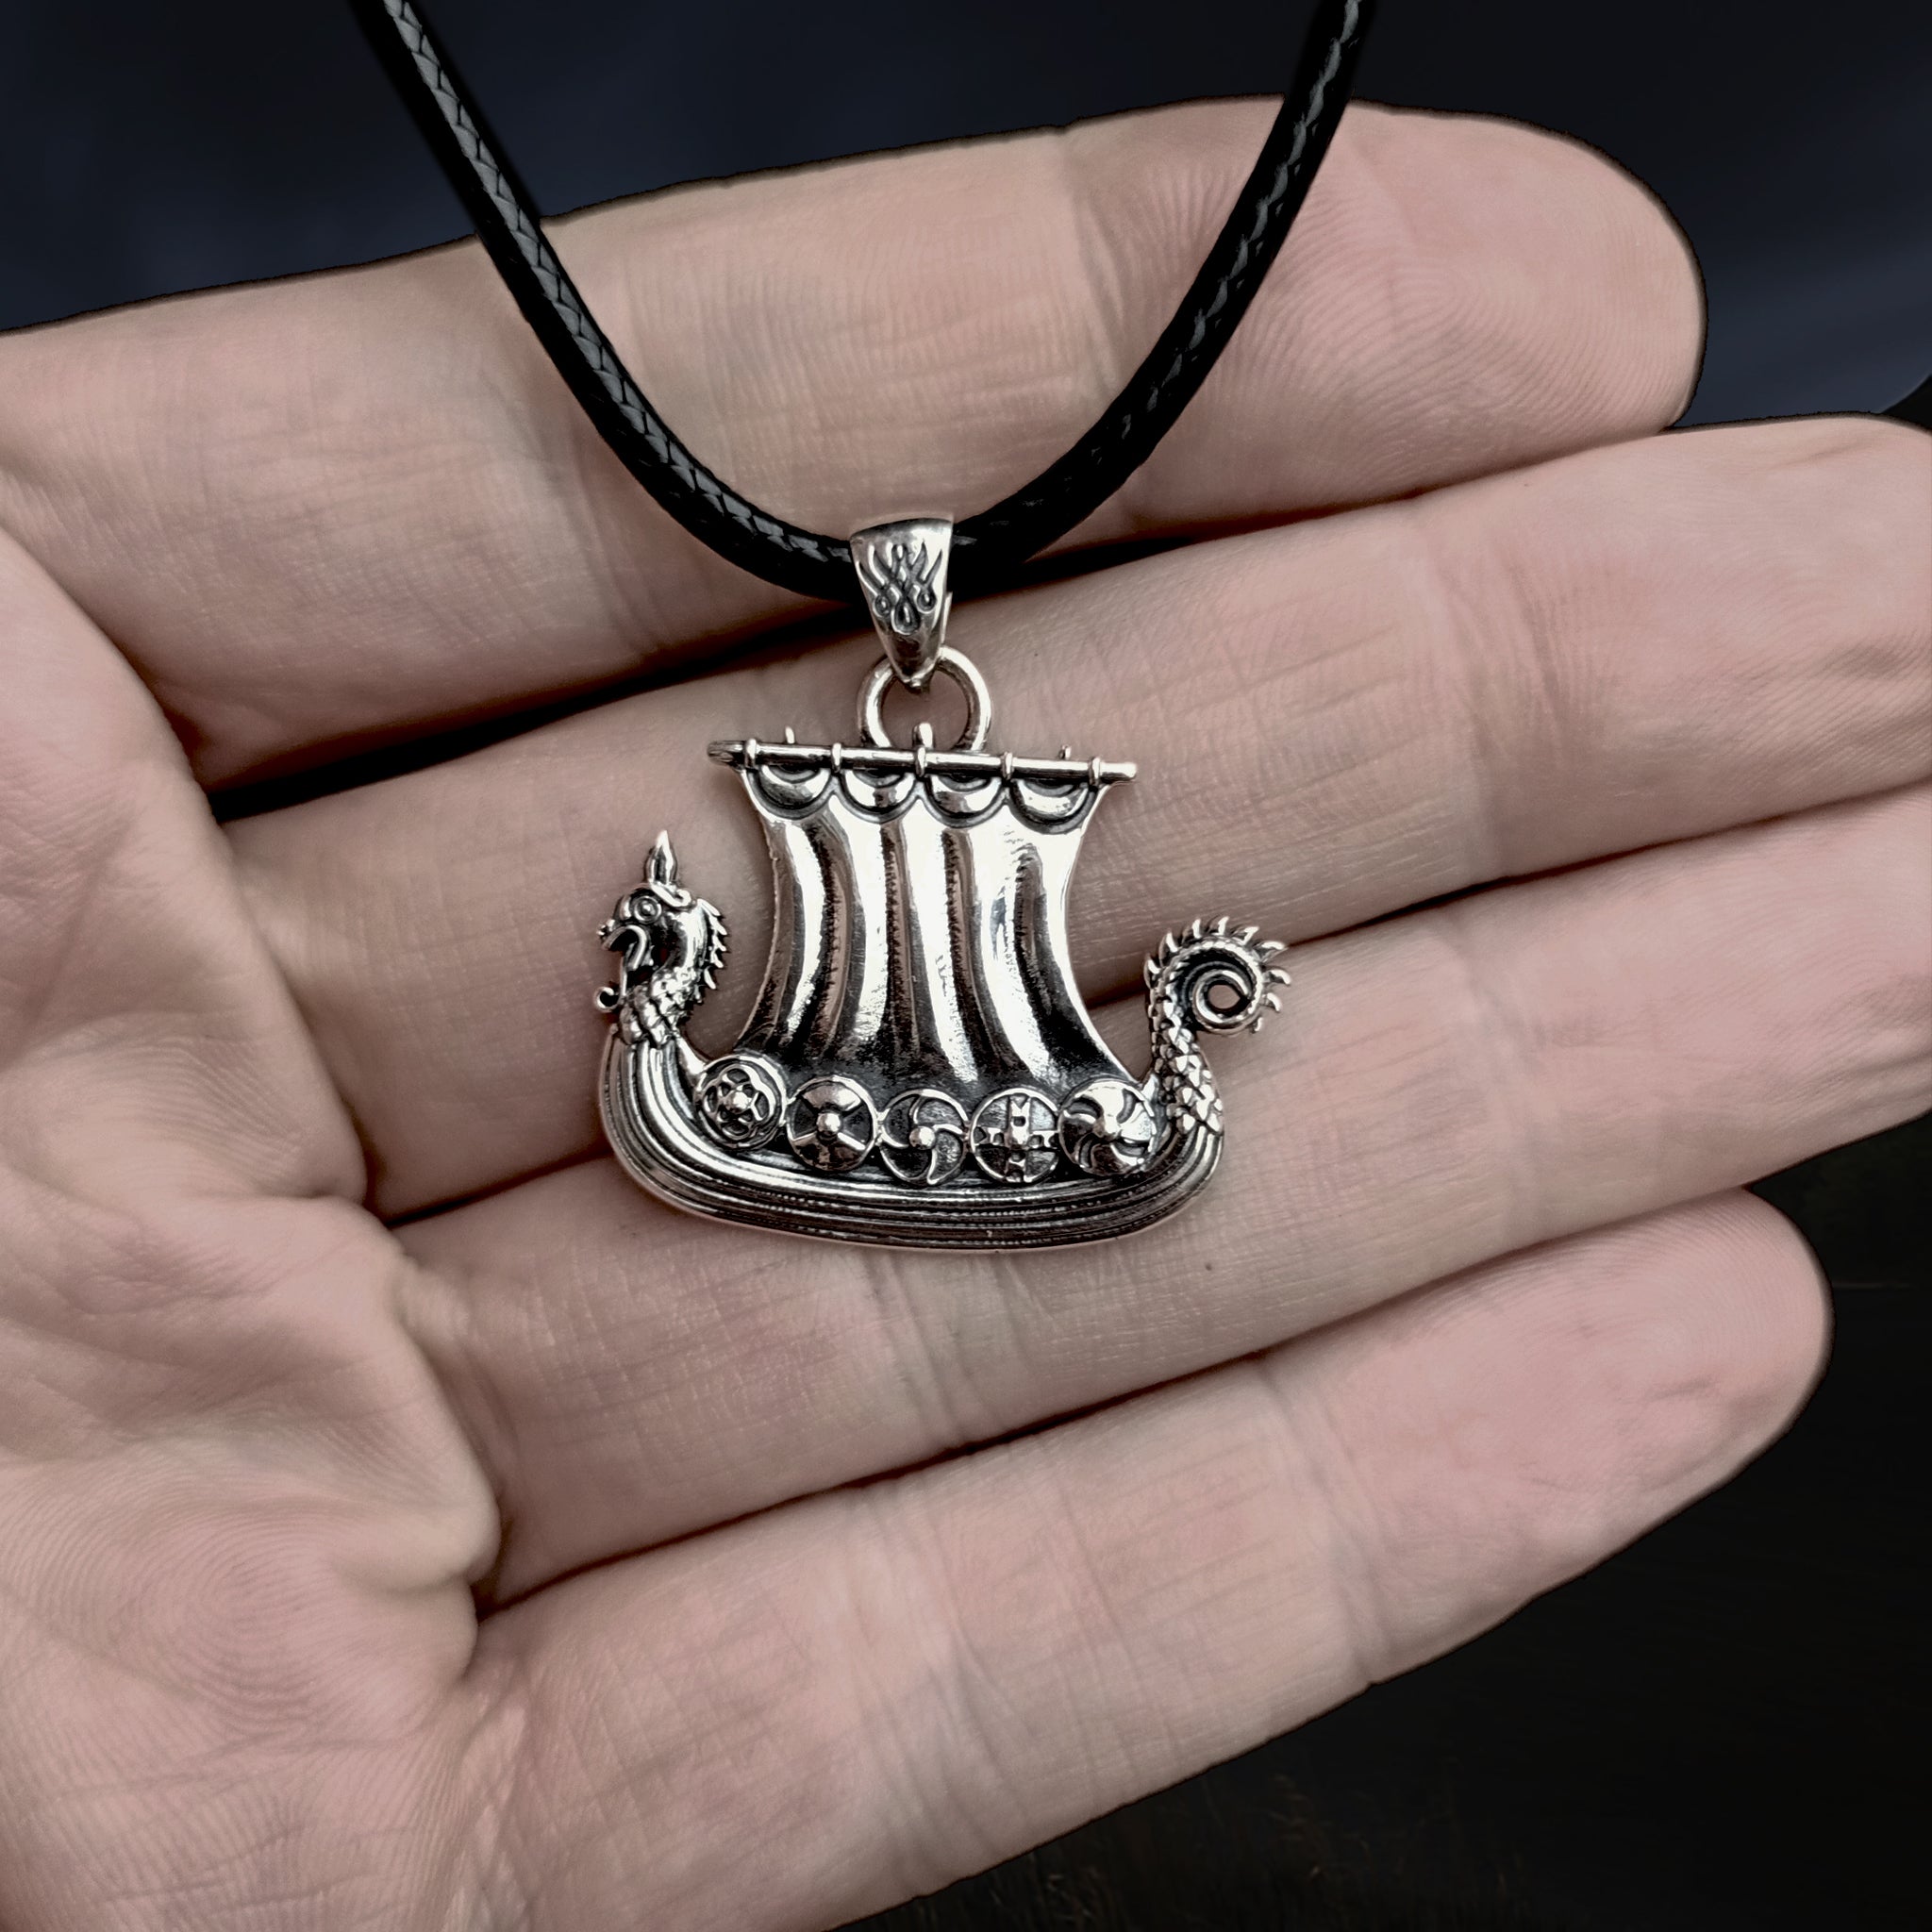 Silver Drakkar Viking Ship Pendant on Hand - Viking Jewelry